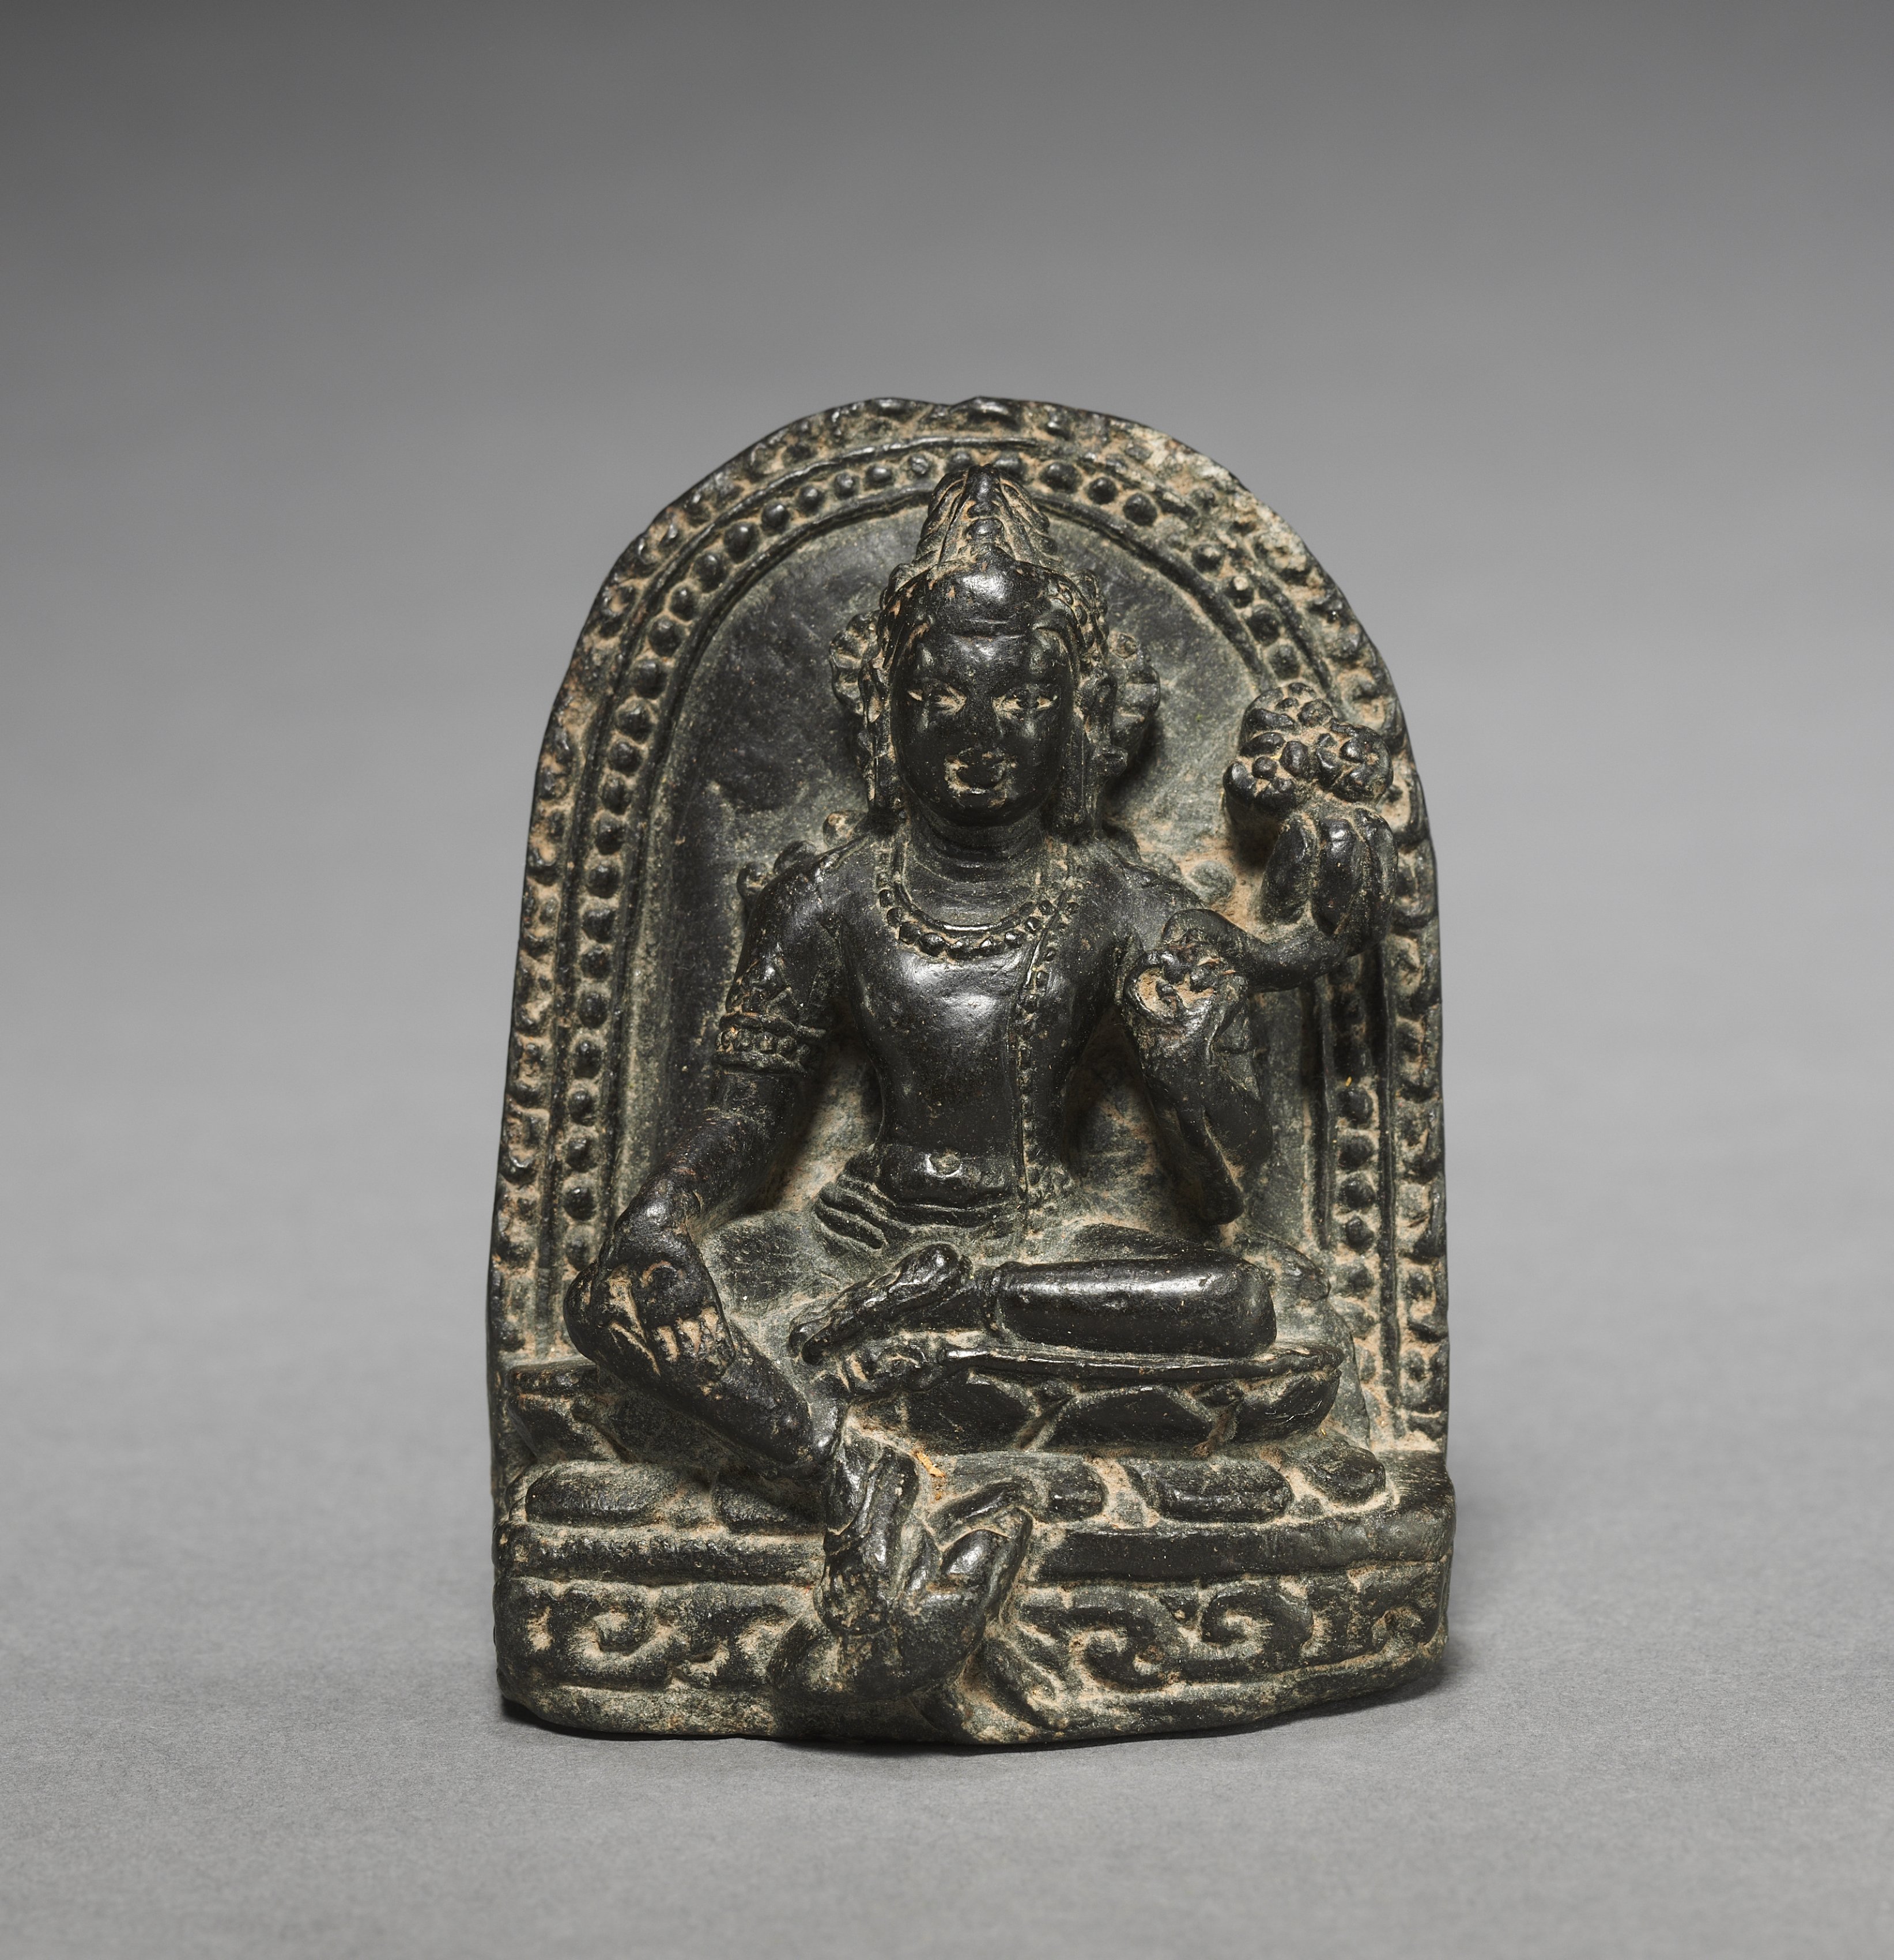 Stele with Padmapani